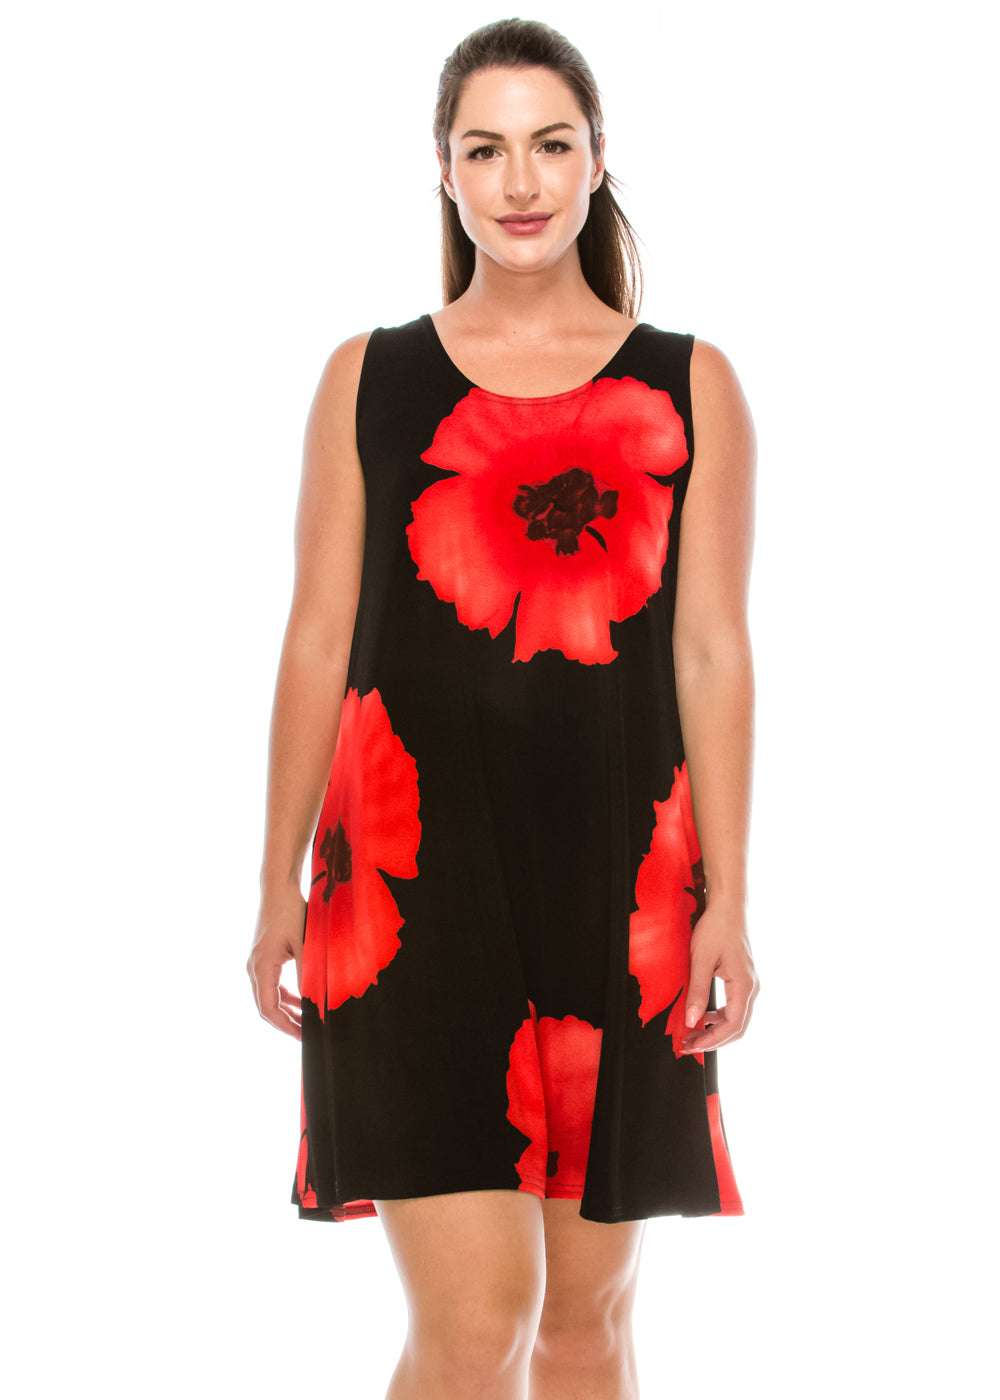 Jostar Women's Stretchy Missy Tank Dress Print, 703BN-TP-W113 - Jostar Online